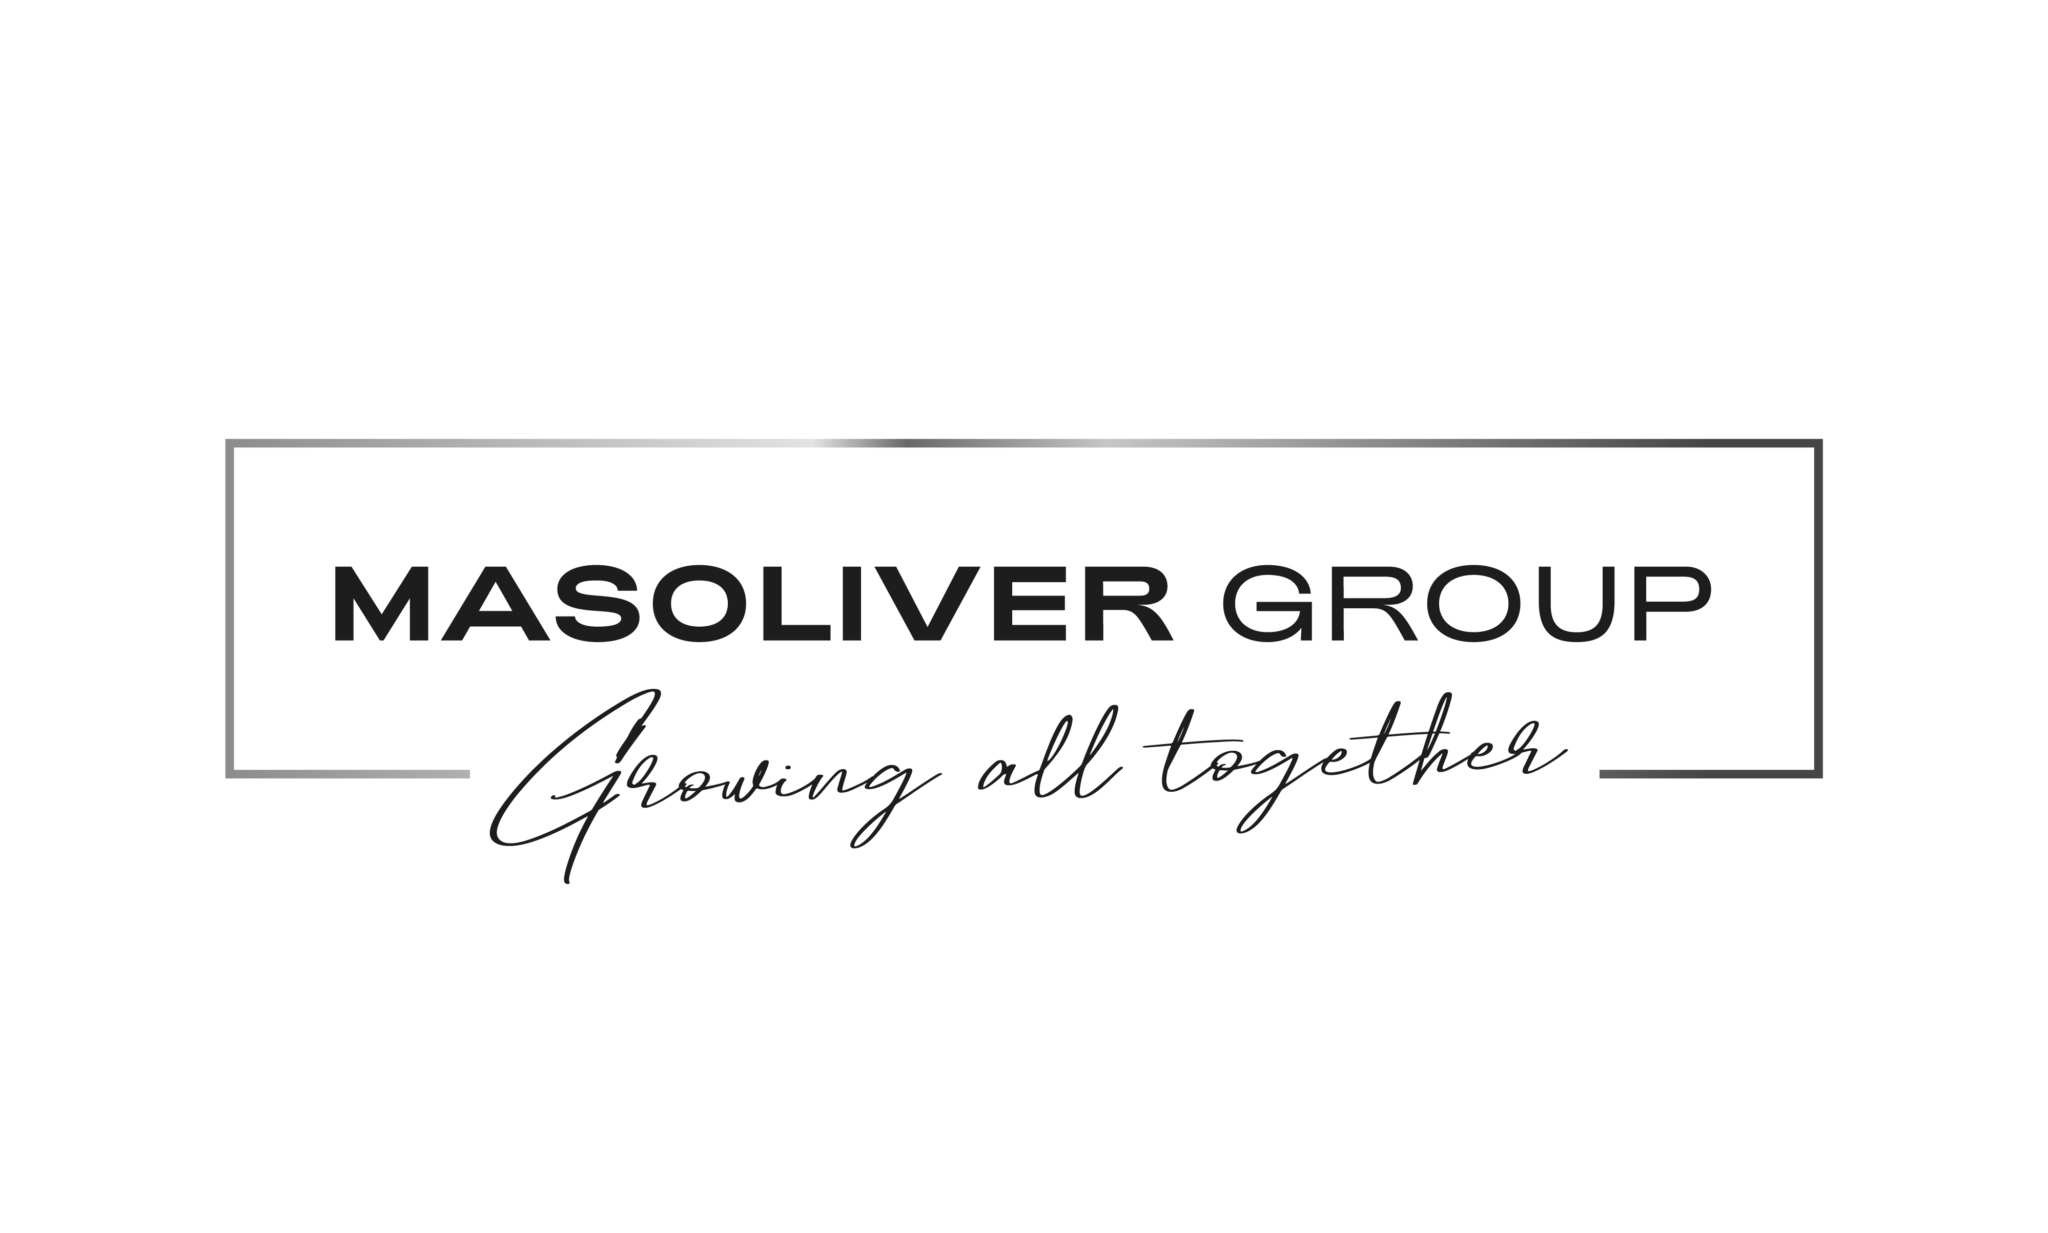 Nova imagem do Masoliver Group